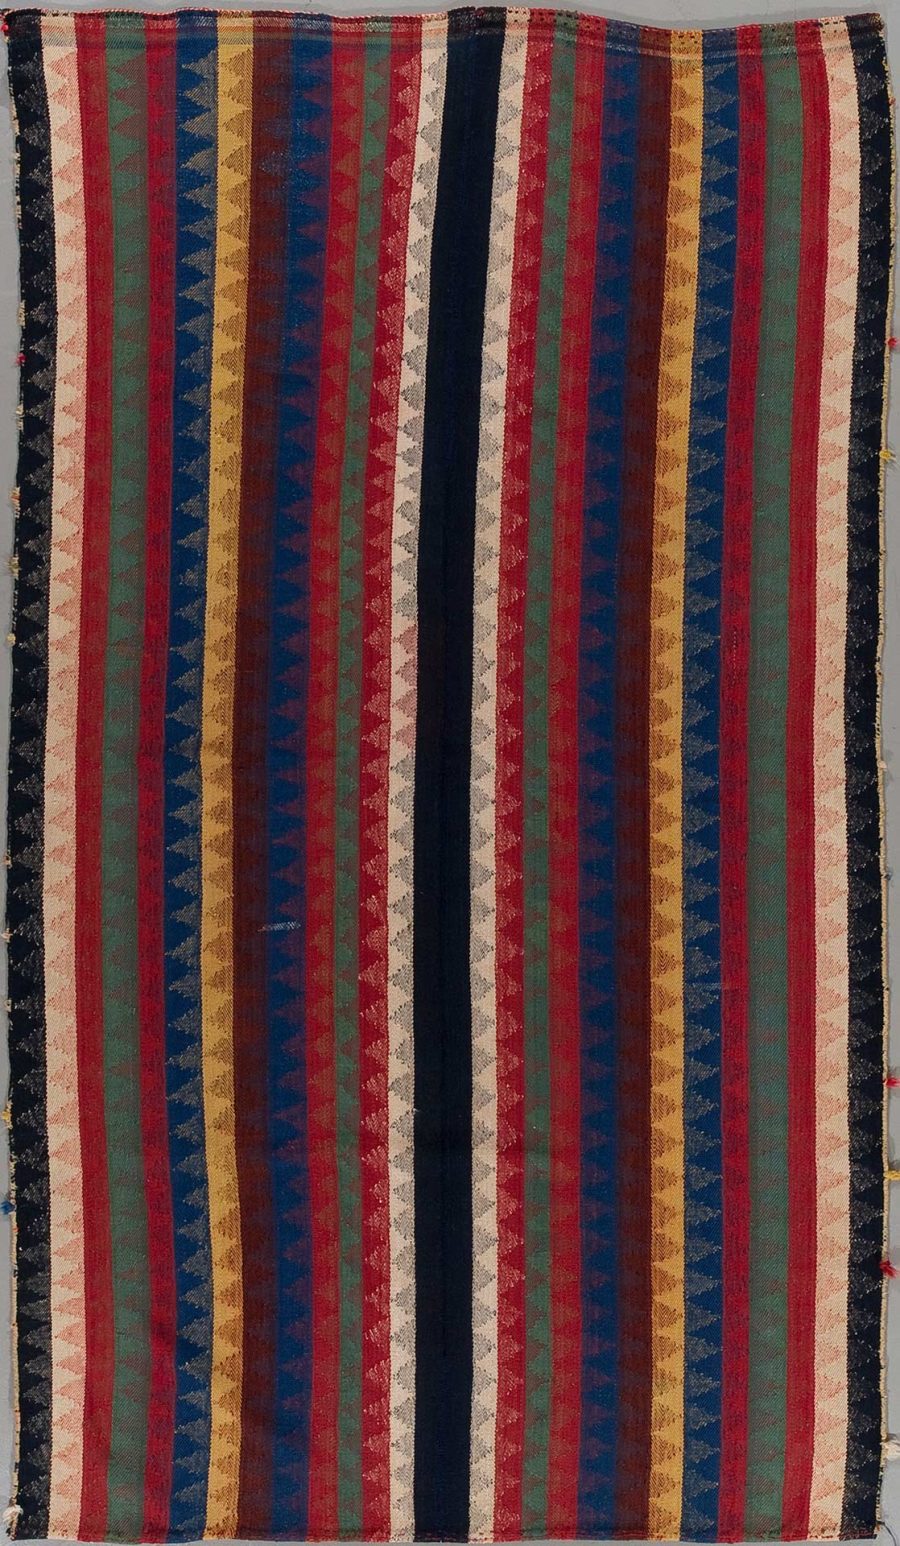 Antikes, gestreiftes Textil mit verschiedenen breiten Streifen in den Farben Rot, Blau, Grün und Beige auf schwarzem Hintergrund, rustikal gewebt mit sichtbaren Verschleißspuren.